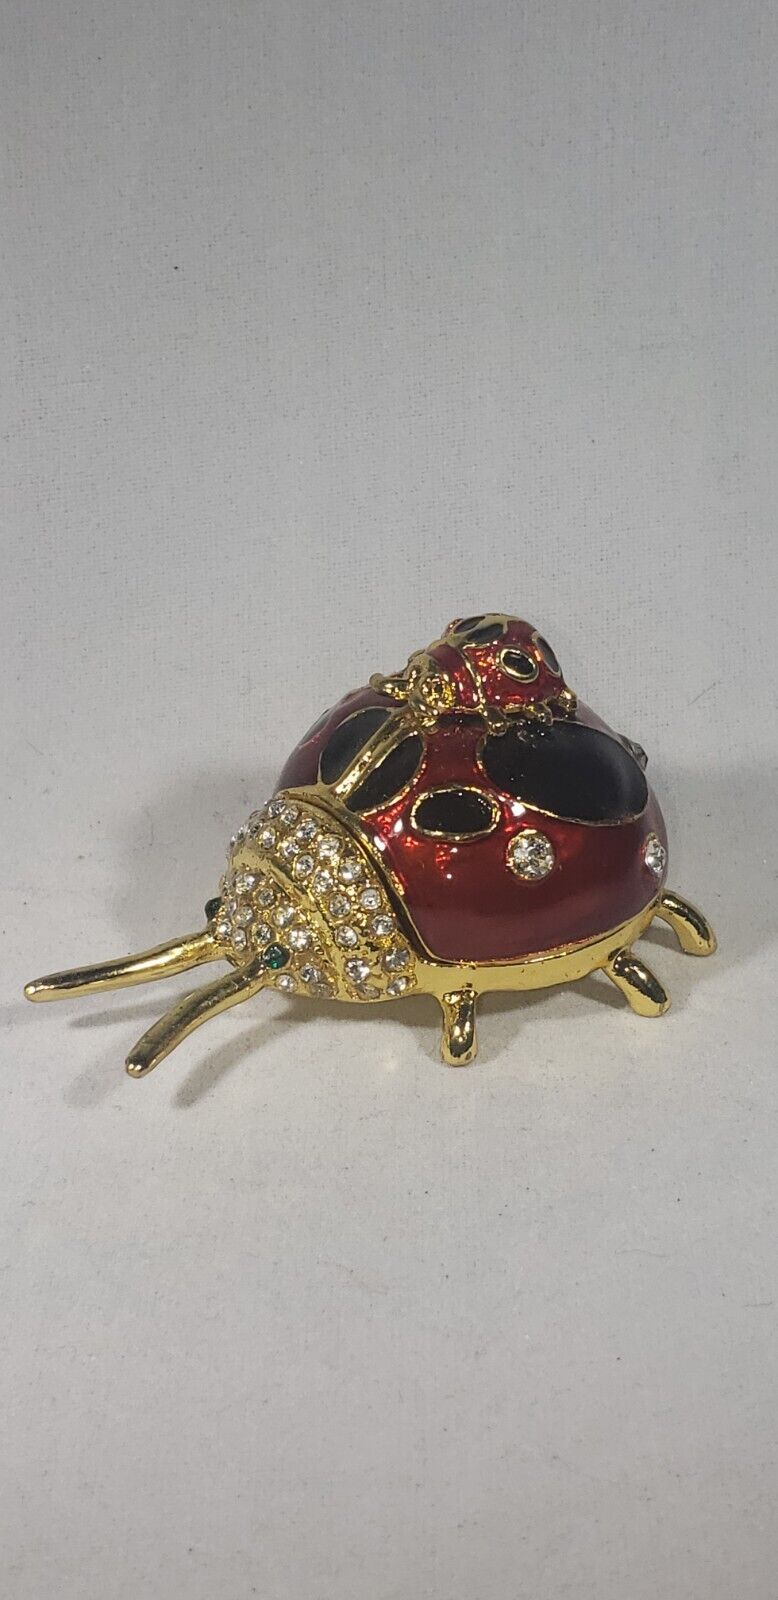 ladybug swarovski crystal trinket jewelrty box